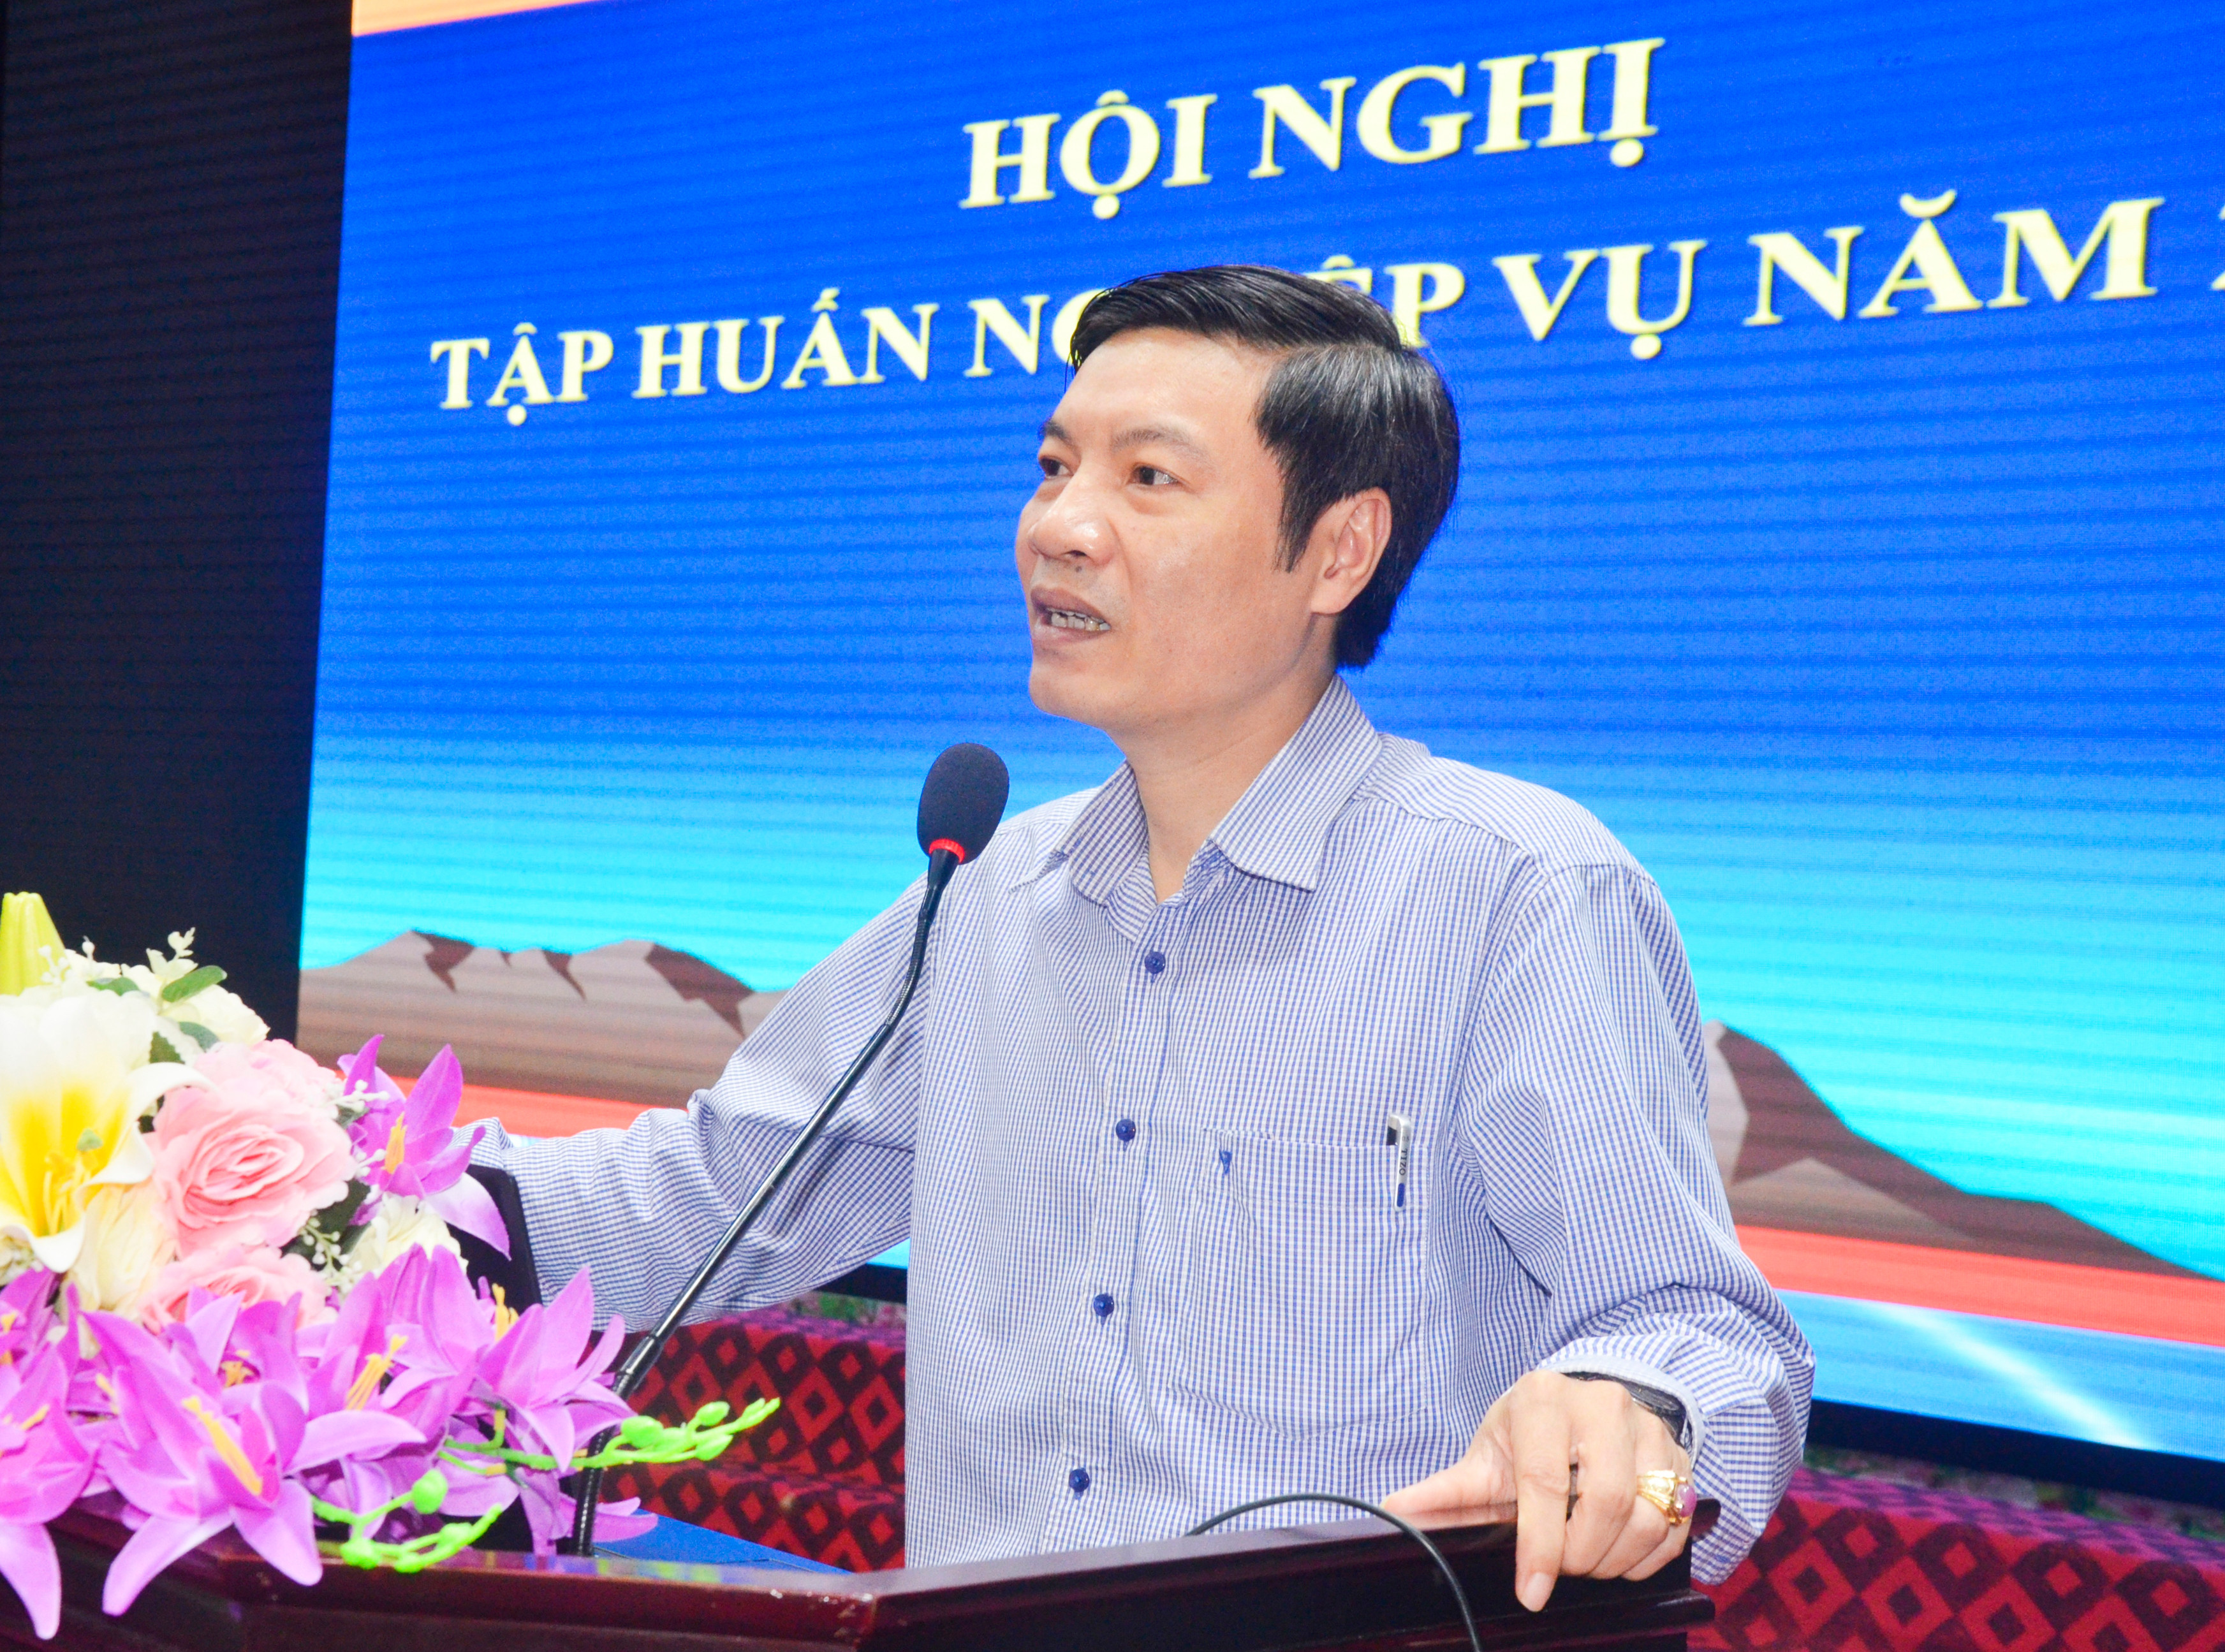 Phó Trưởng Ban Thi đua khen thưởng tỉnh Nguyễn Hồng Thanh truyền đạt các nội dung, quy định mới về công tác thi đua khen thưởng.